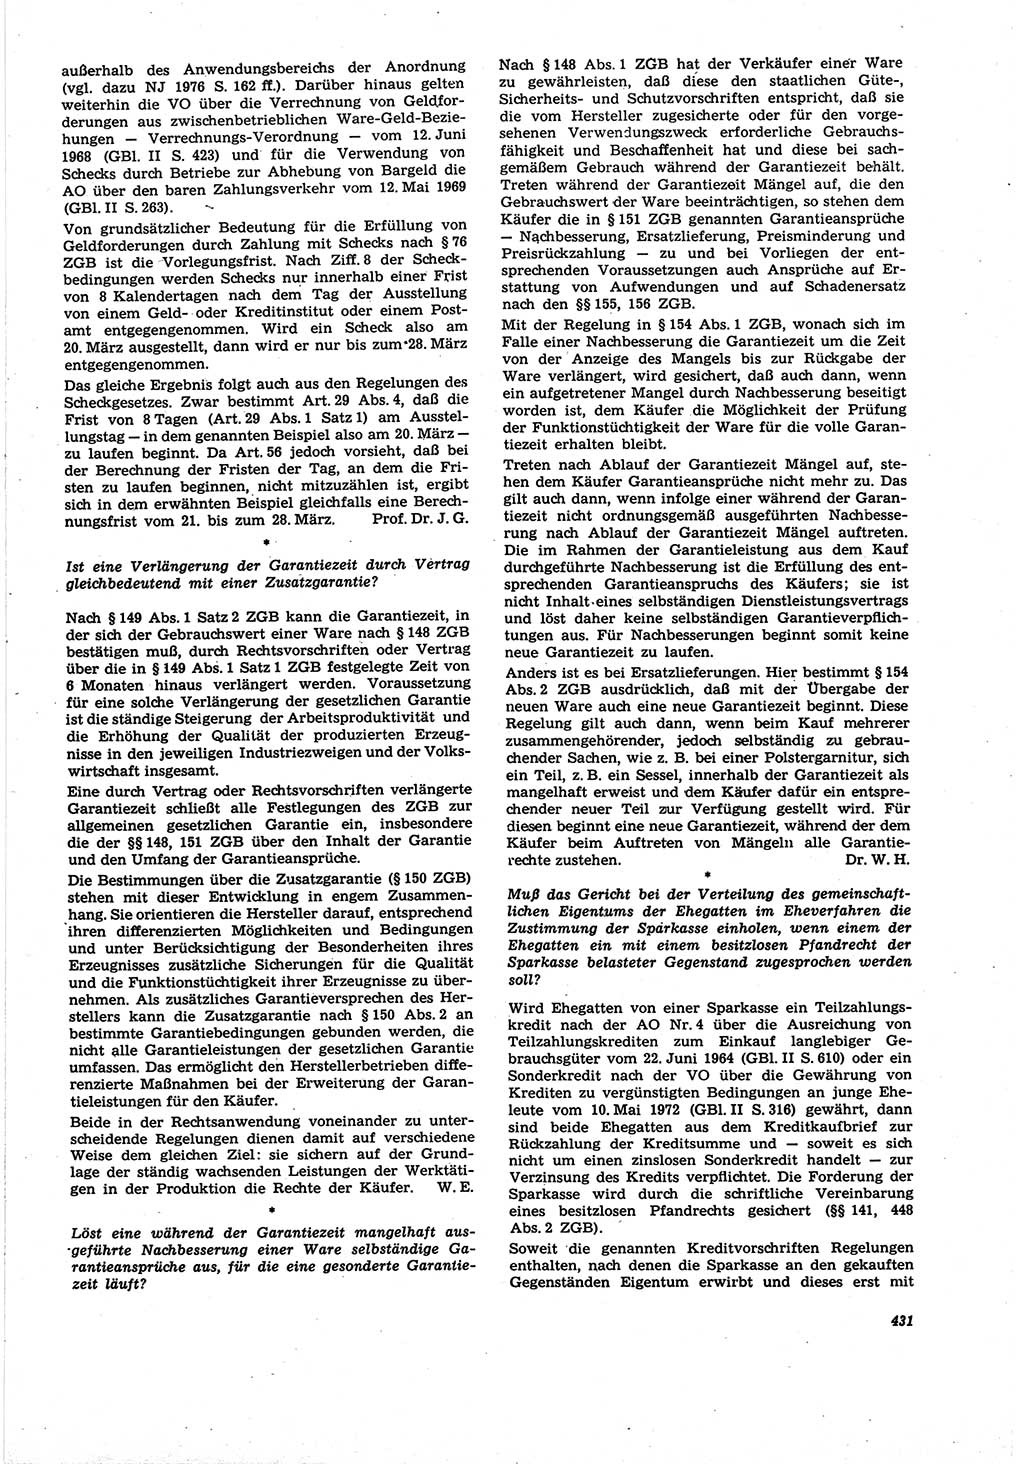 Neue Justiz (NJ), Zeitschrift für Recht und Rechtswissenschaft [Deutsche Demokratische Republik (DDR)], 30. Jahrgang 1976, Seite 431 (NJ DDR 1976, S. 431)